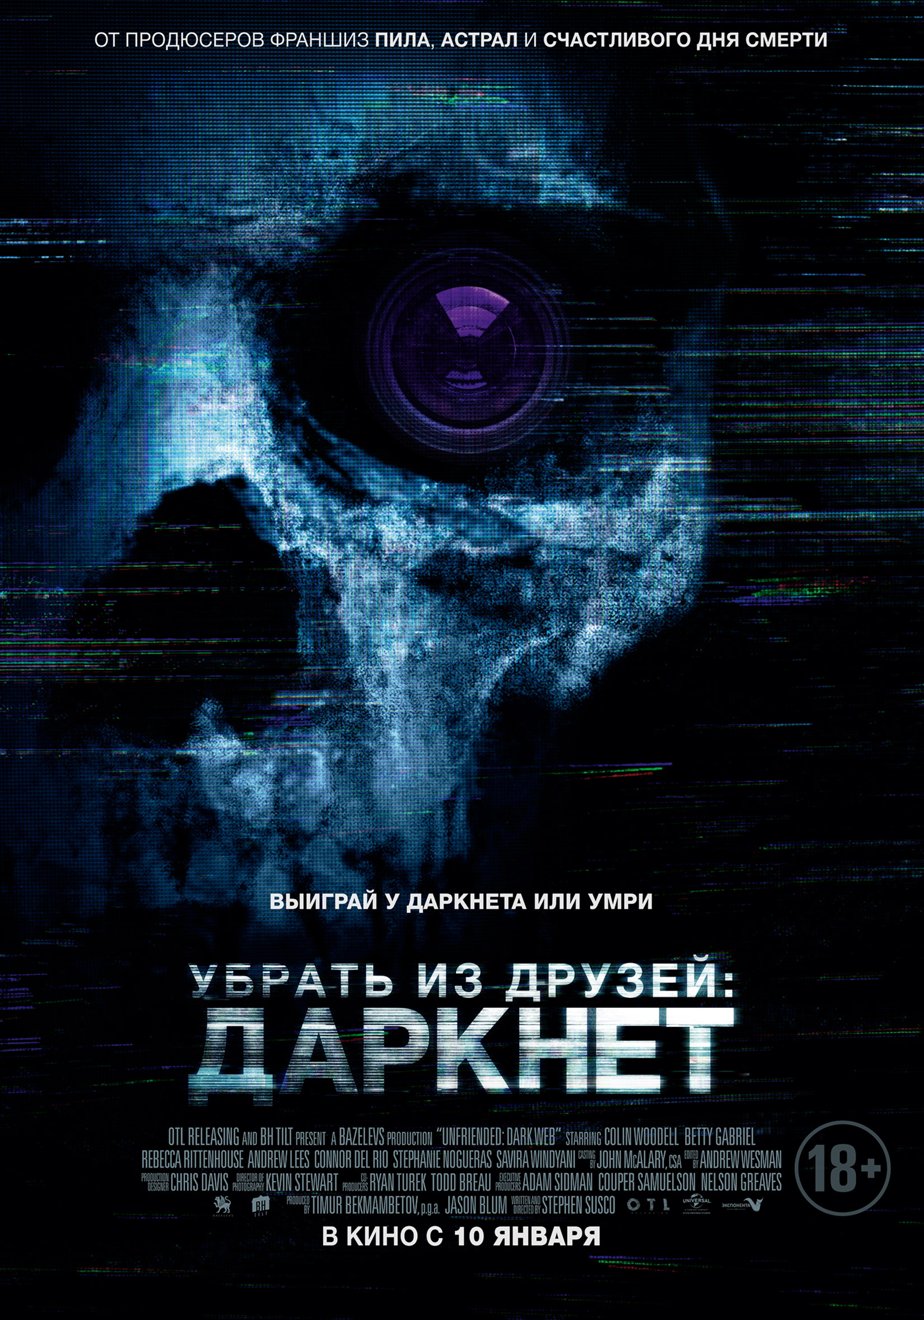 Darknet сериал смотреть вход на мегу скачать тор браузер 2014 megaruzxpnew4af